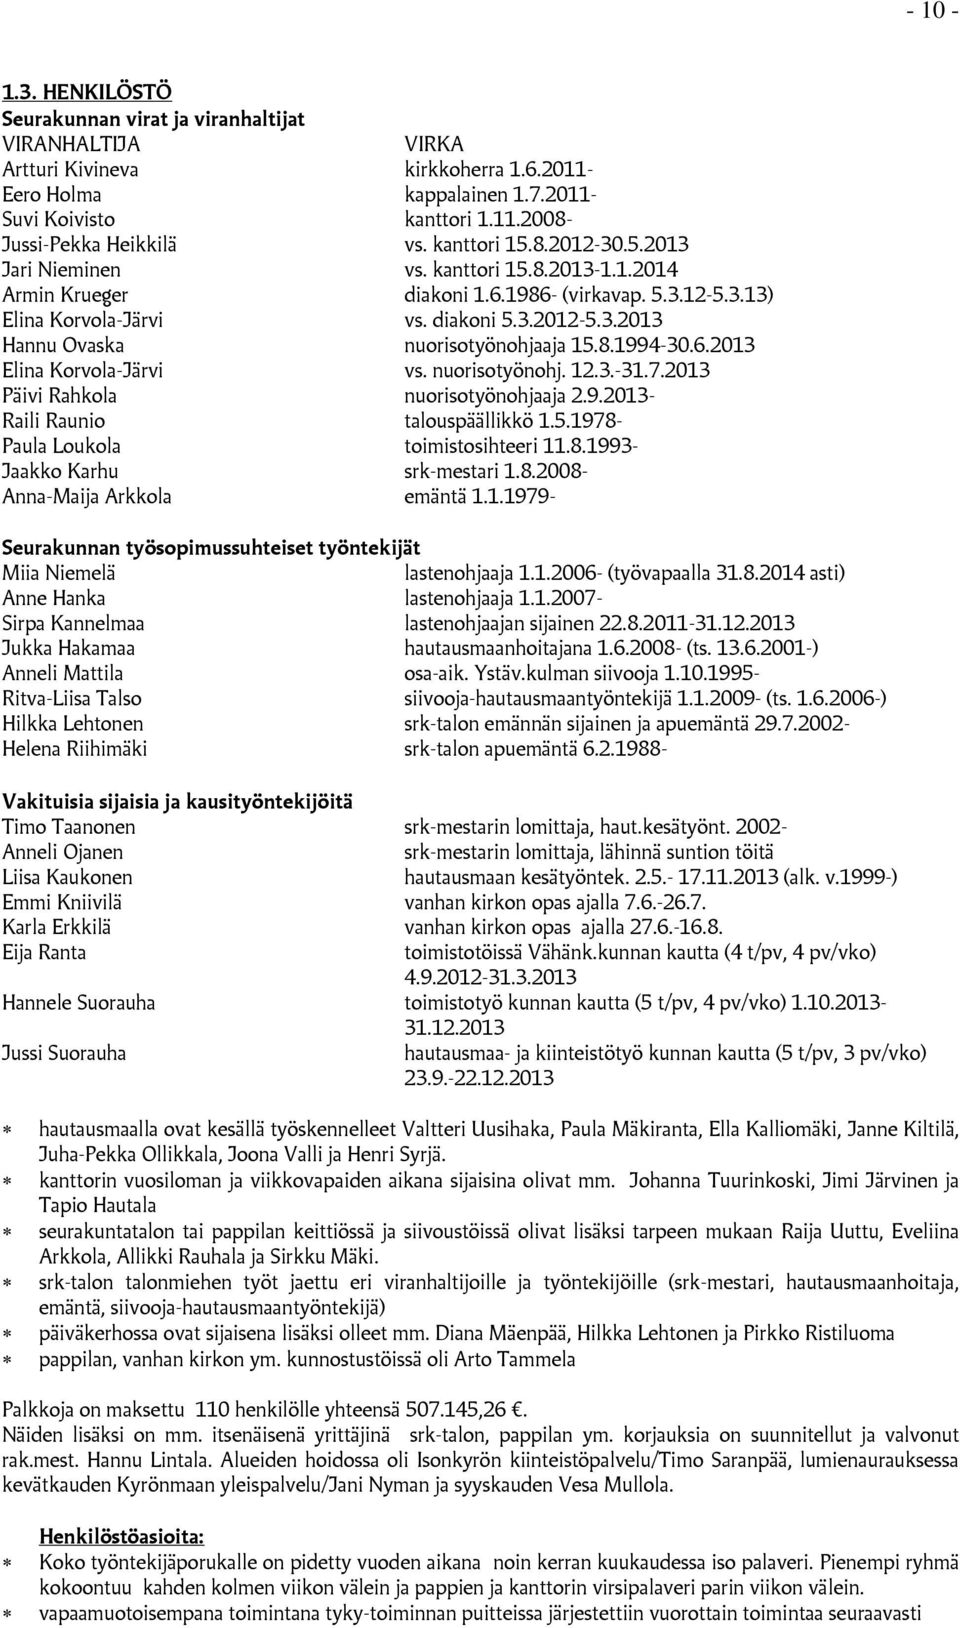 8.1994-30.6.2013 Elina Korvola-Järvi vs. nuorisotyönohj. 12.3.-31.7.2013 Päivi Rahkola nuorisotyönohjaaja 2.9.2013- Raili Raunio talouspäällikkö 1.5.1978- Paula Loukola toimistosihteeri 11.8.1993- Jaakko Karhu srk-mestari 1.